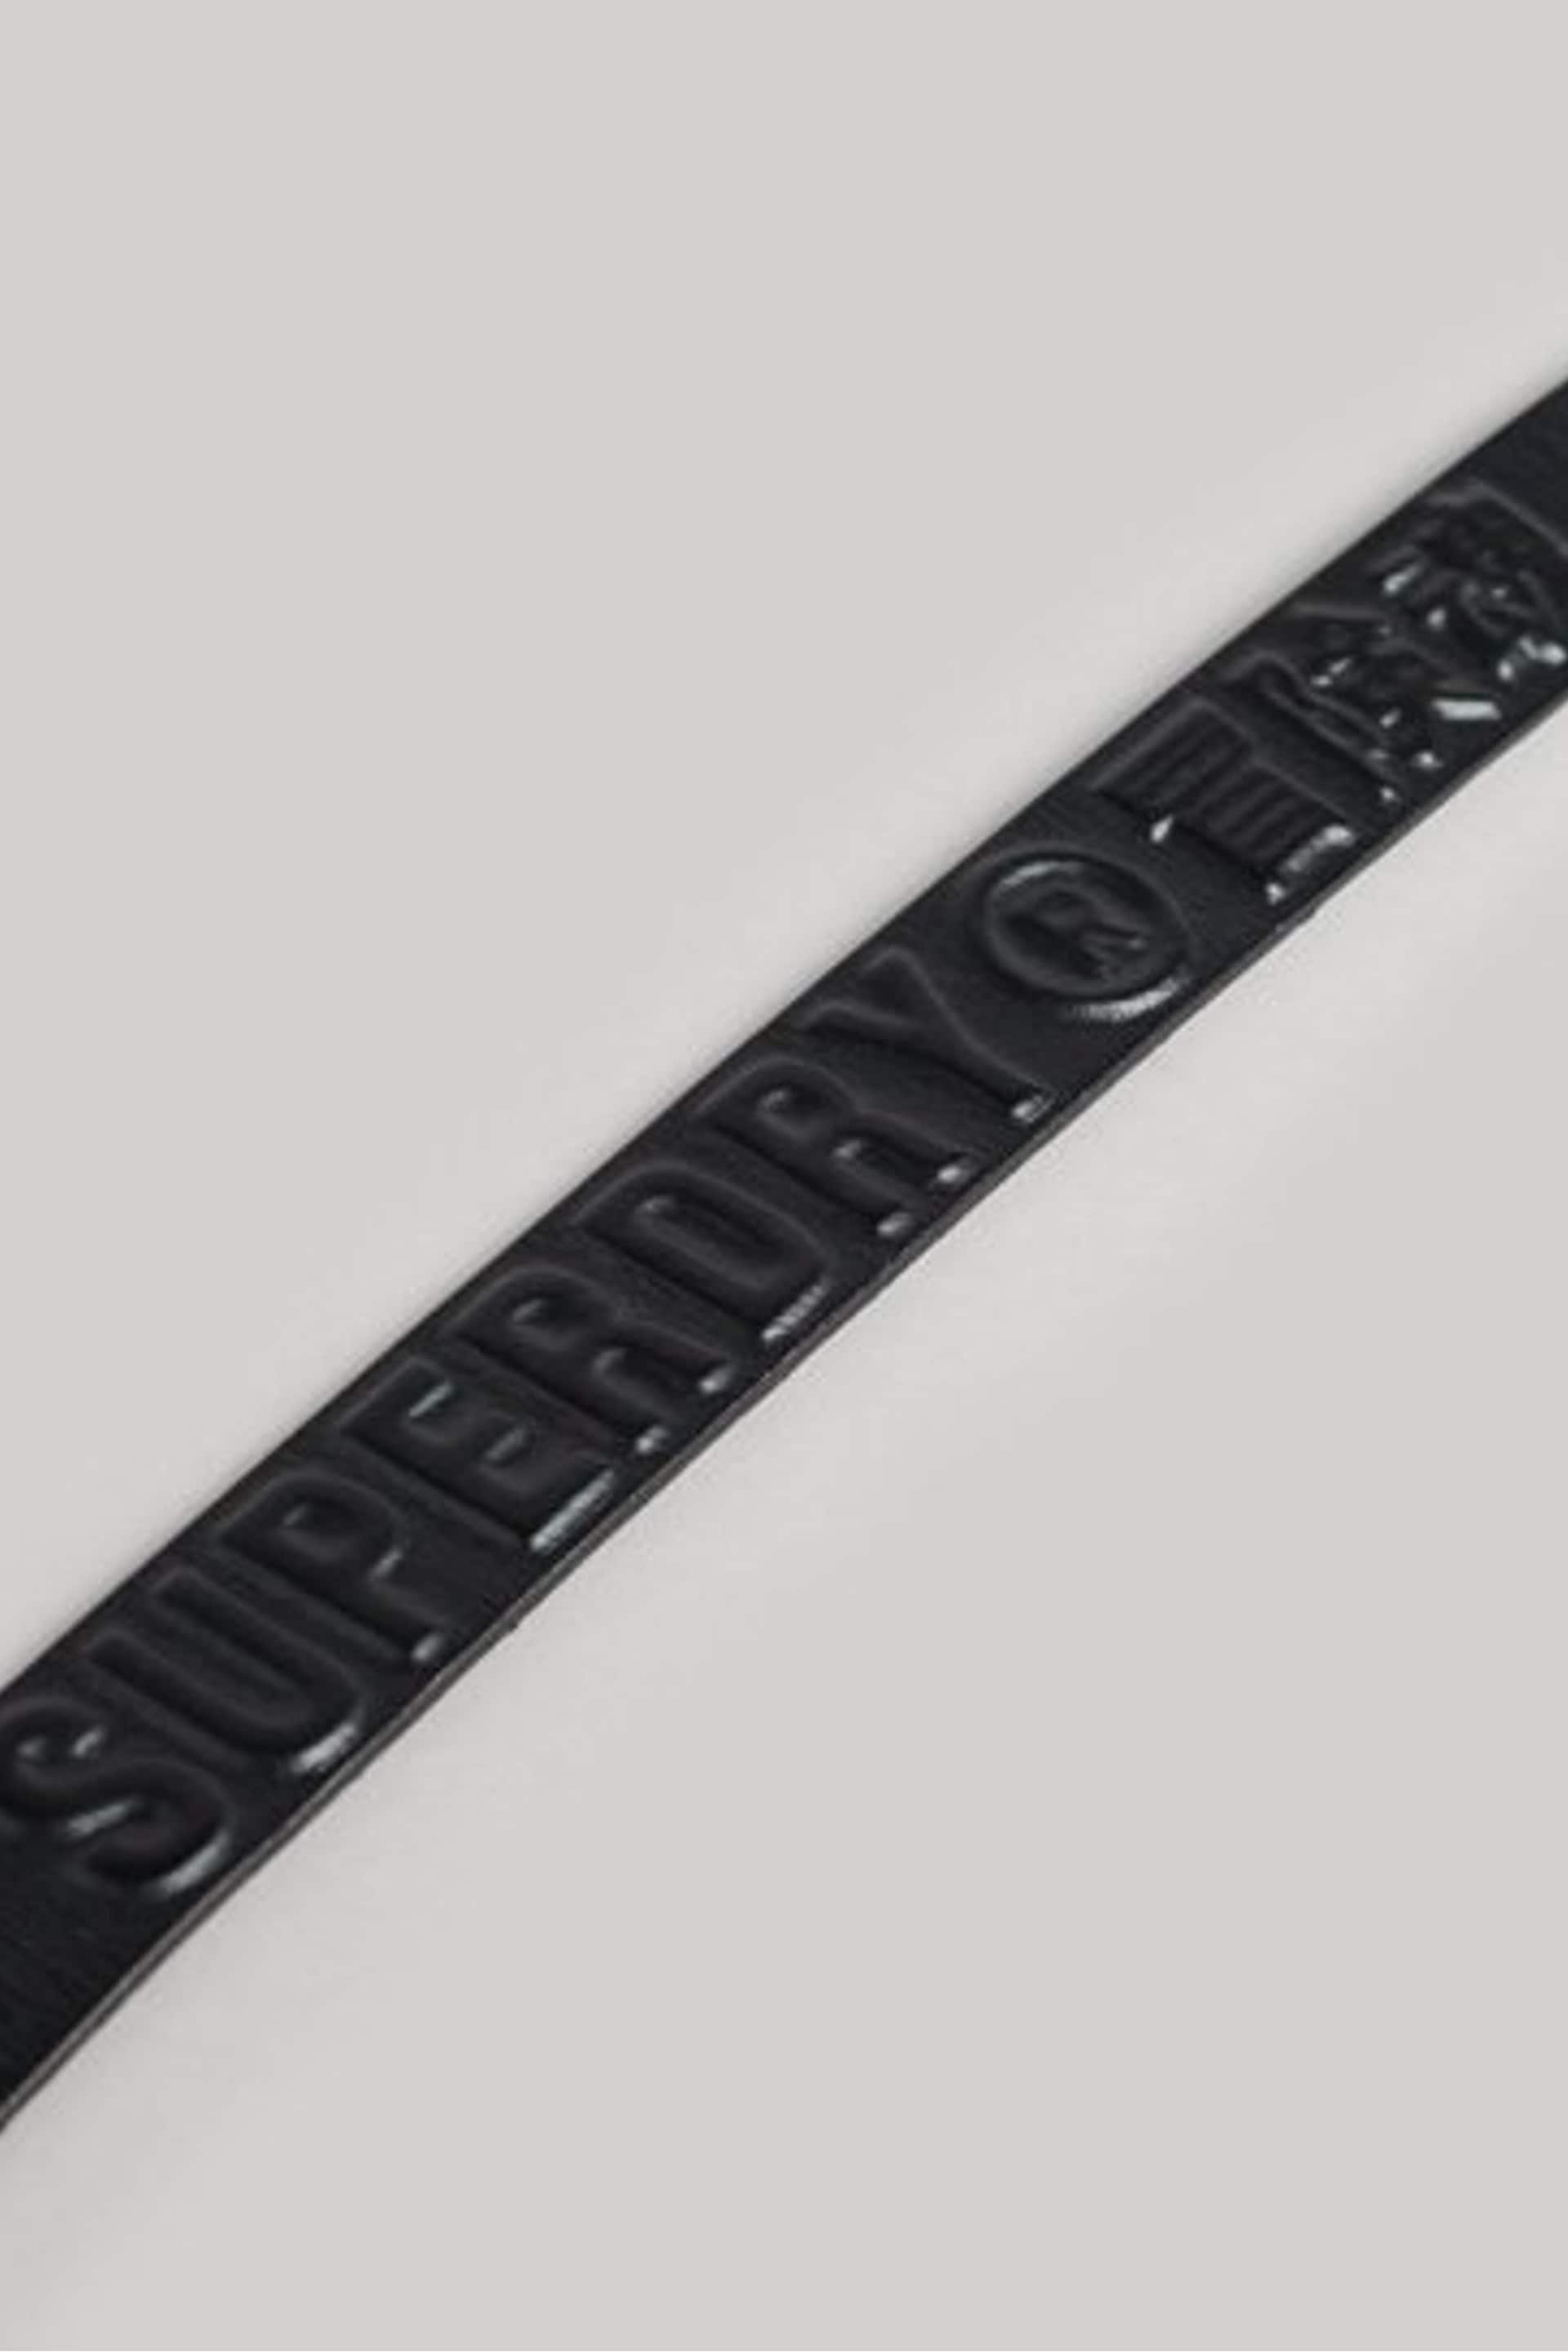 Superdry Black Vintage Branded Belt - Image 3 of 4